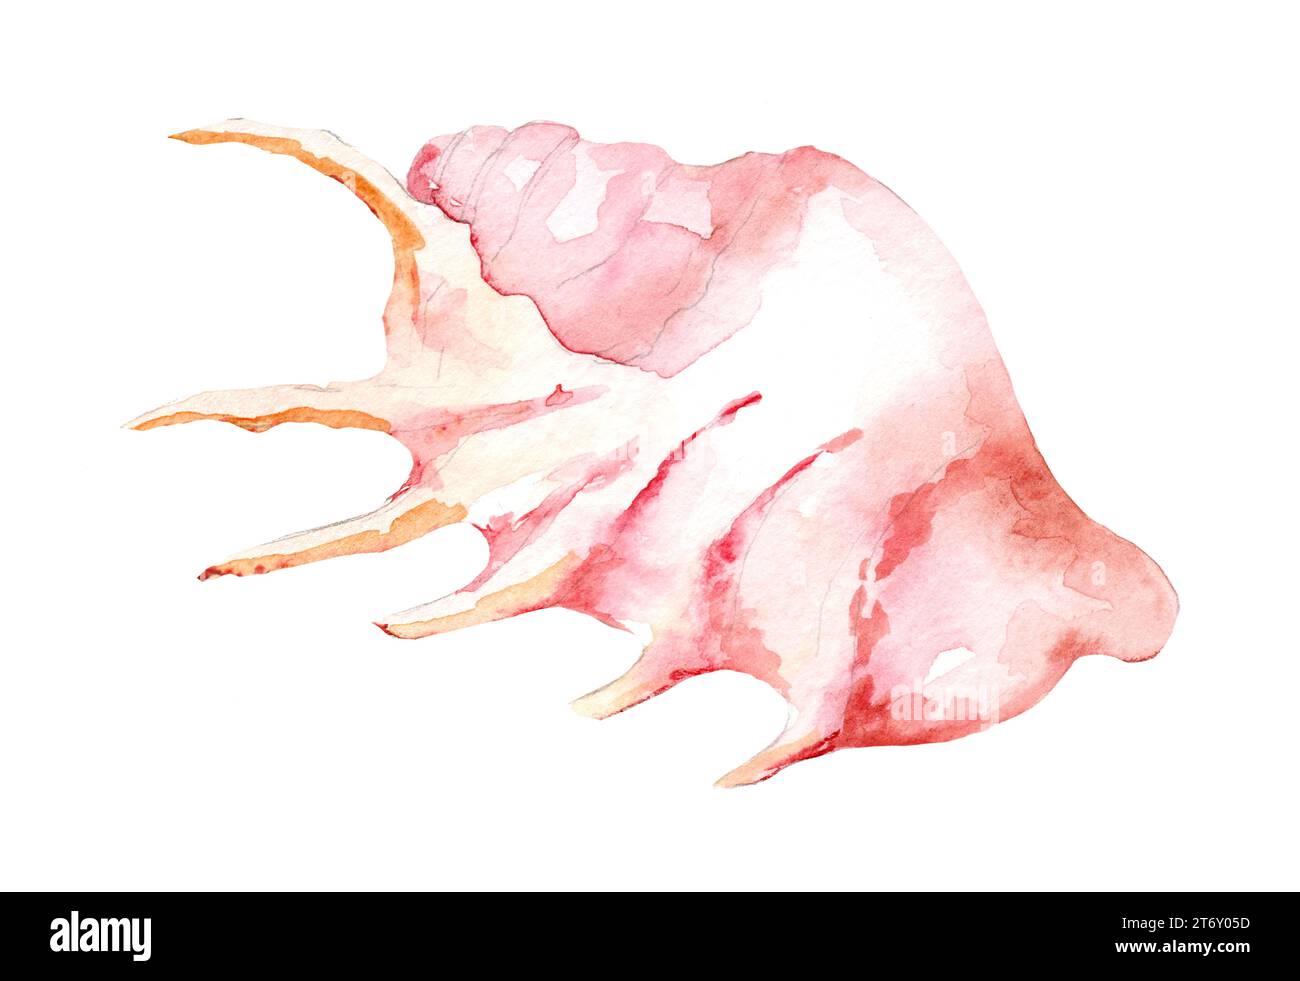 Seashell In Wasserfarben. Handgezeichnete Illustration der Weichtiere auf isoliertem weißem Hintergrund. Farbenfrohe Zeichnung von Sea Shell. Exotische Meeresfauna. Wilde Unterwasserwelt Stockfoto